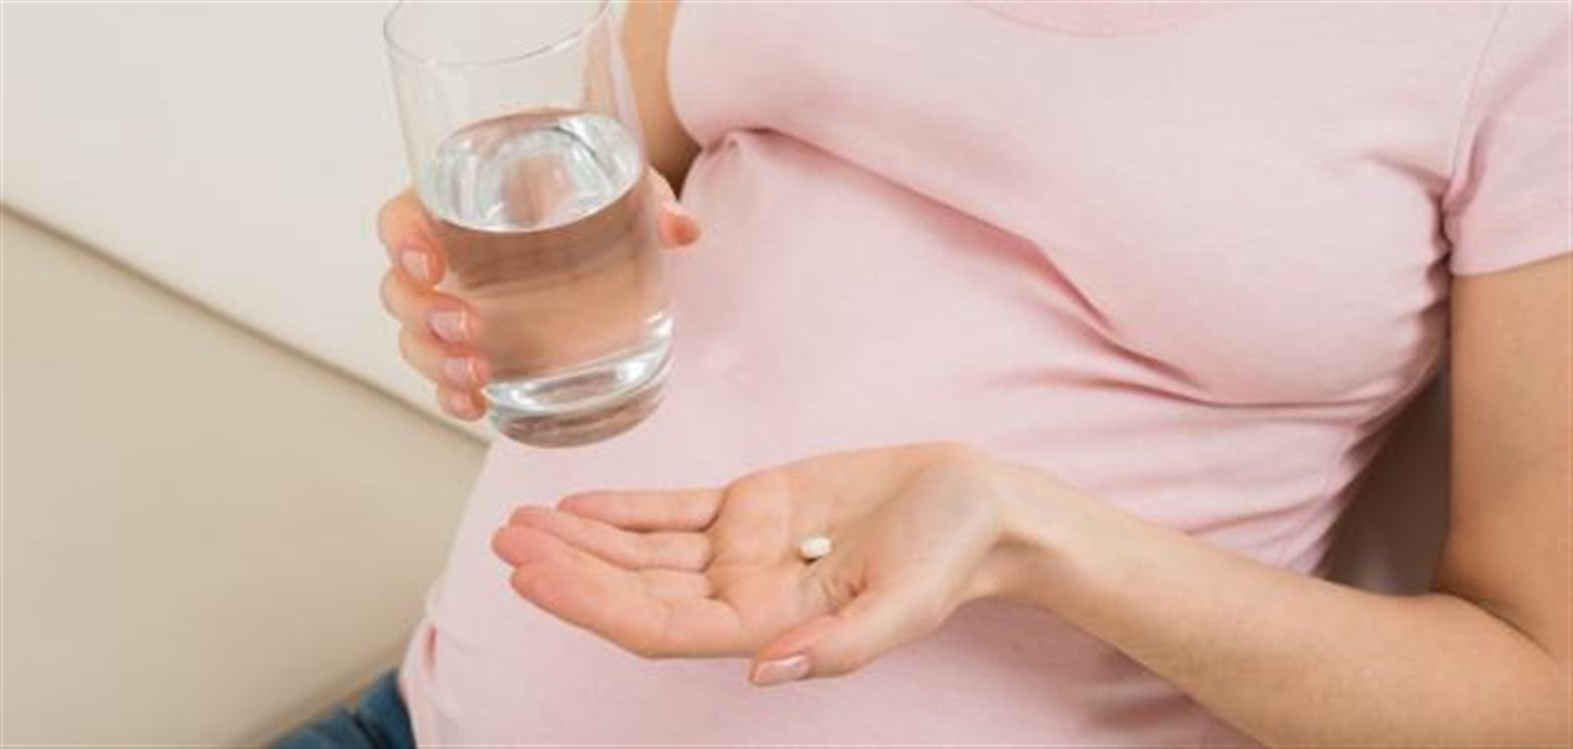 مخاطر تناول المسكنات خلال الحمل 